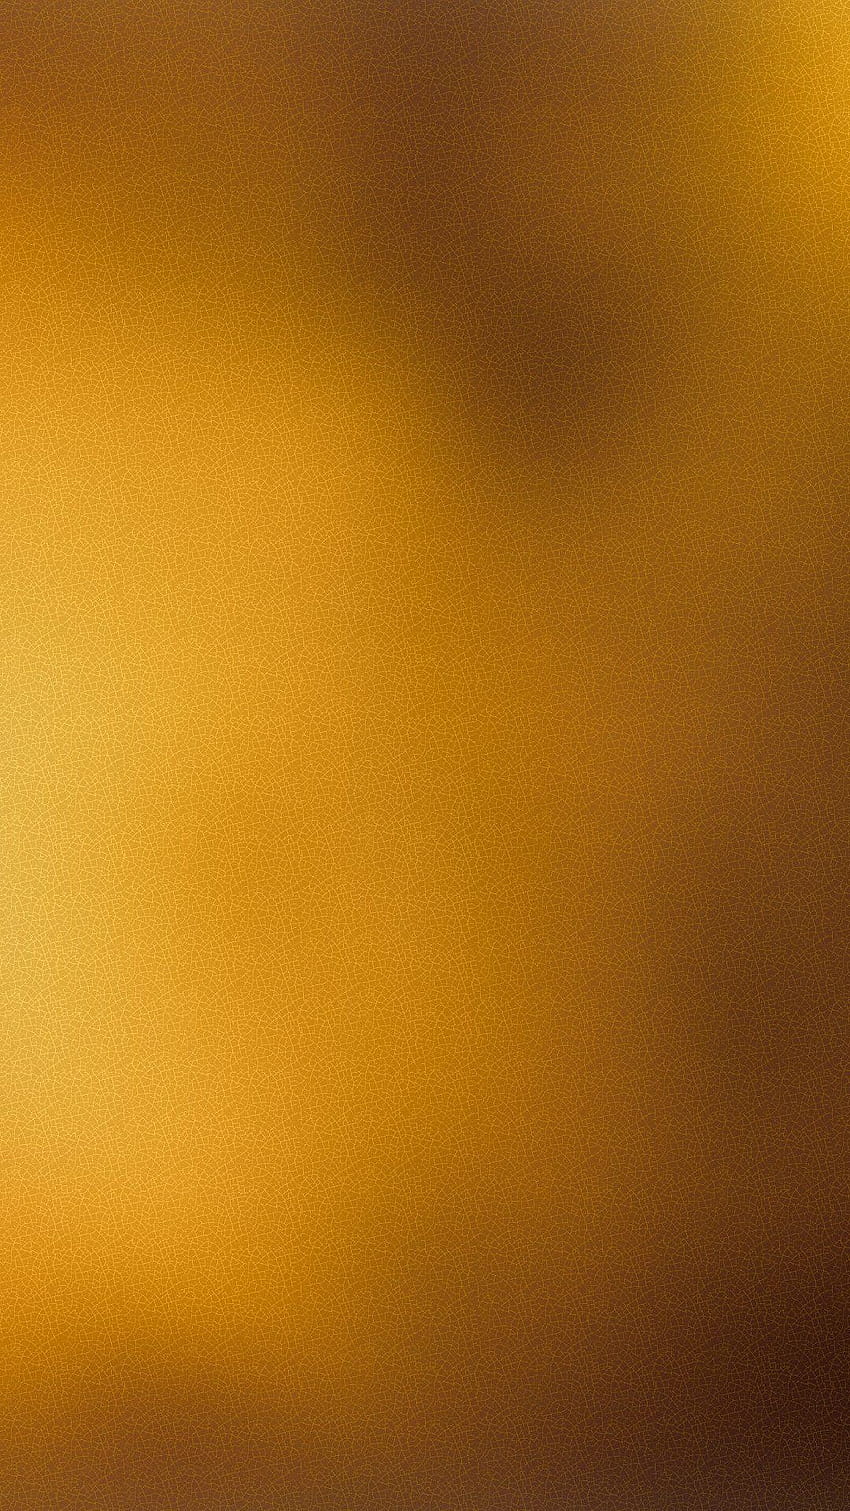 iPhone Plain Gold, golden iphone HD phone wallpaper